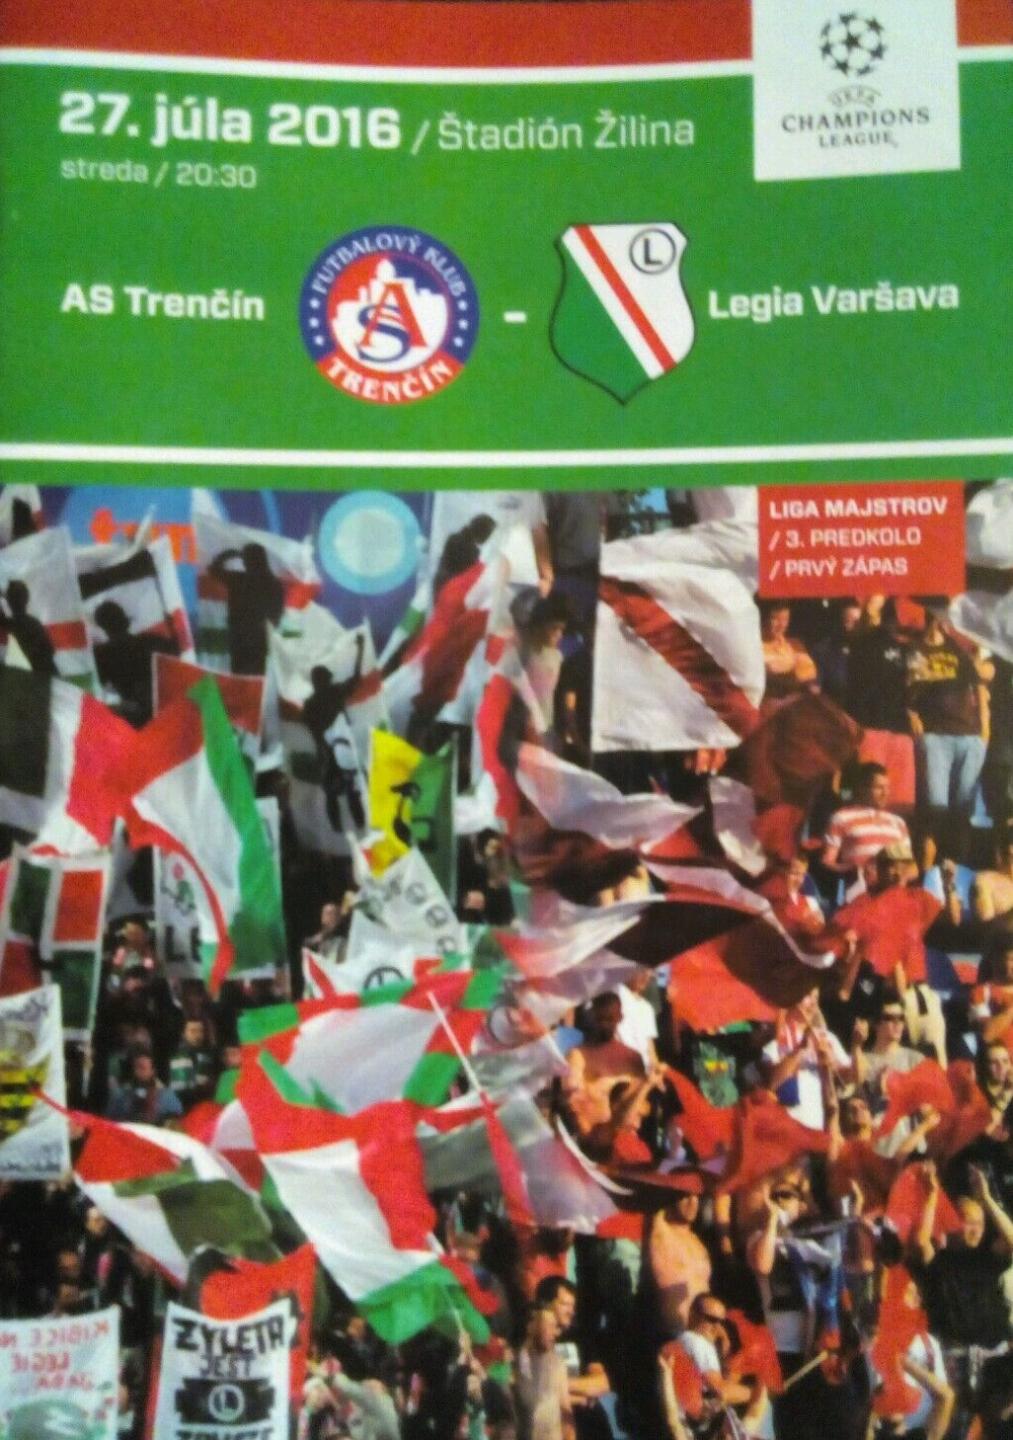 Program meczowy AS Trenčín - Legia Warszawa 0:1 (27.07.2016)